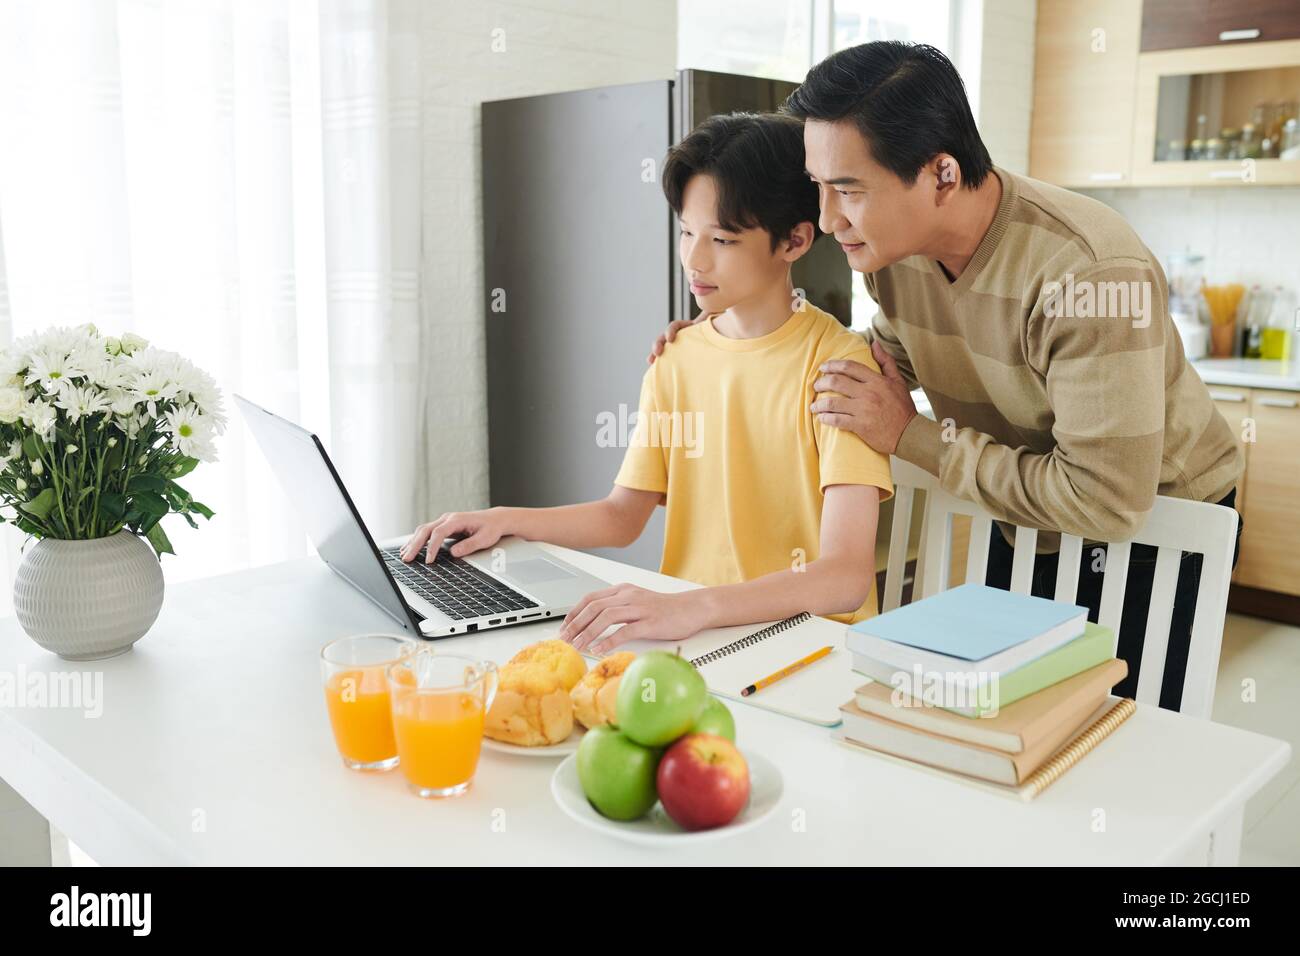 Stolzer Vater hilft seinem Sohn im Teenageralter bei der Hausaufgabe auf dem Laptop, wenn er aufgrund einer Pandemie online studiert Stockfoto